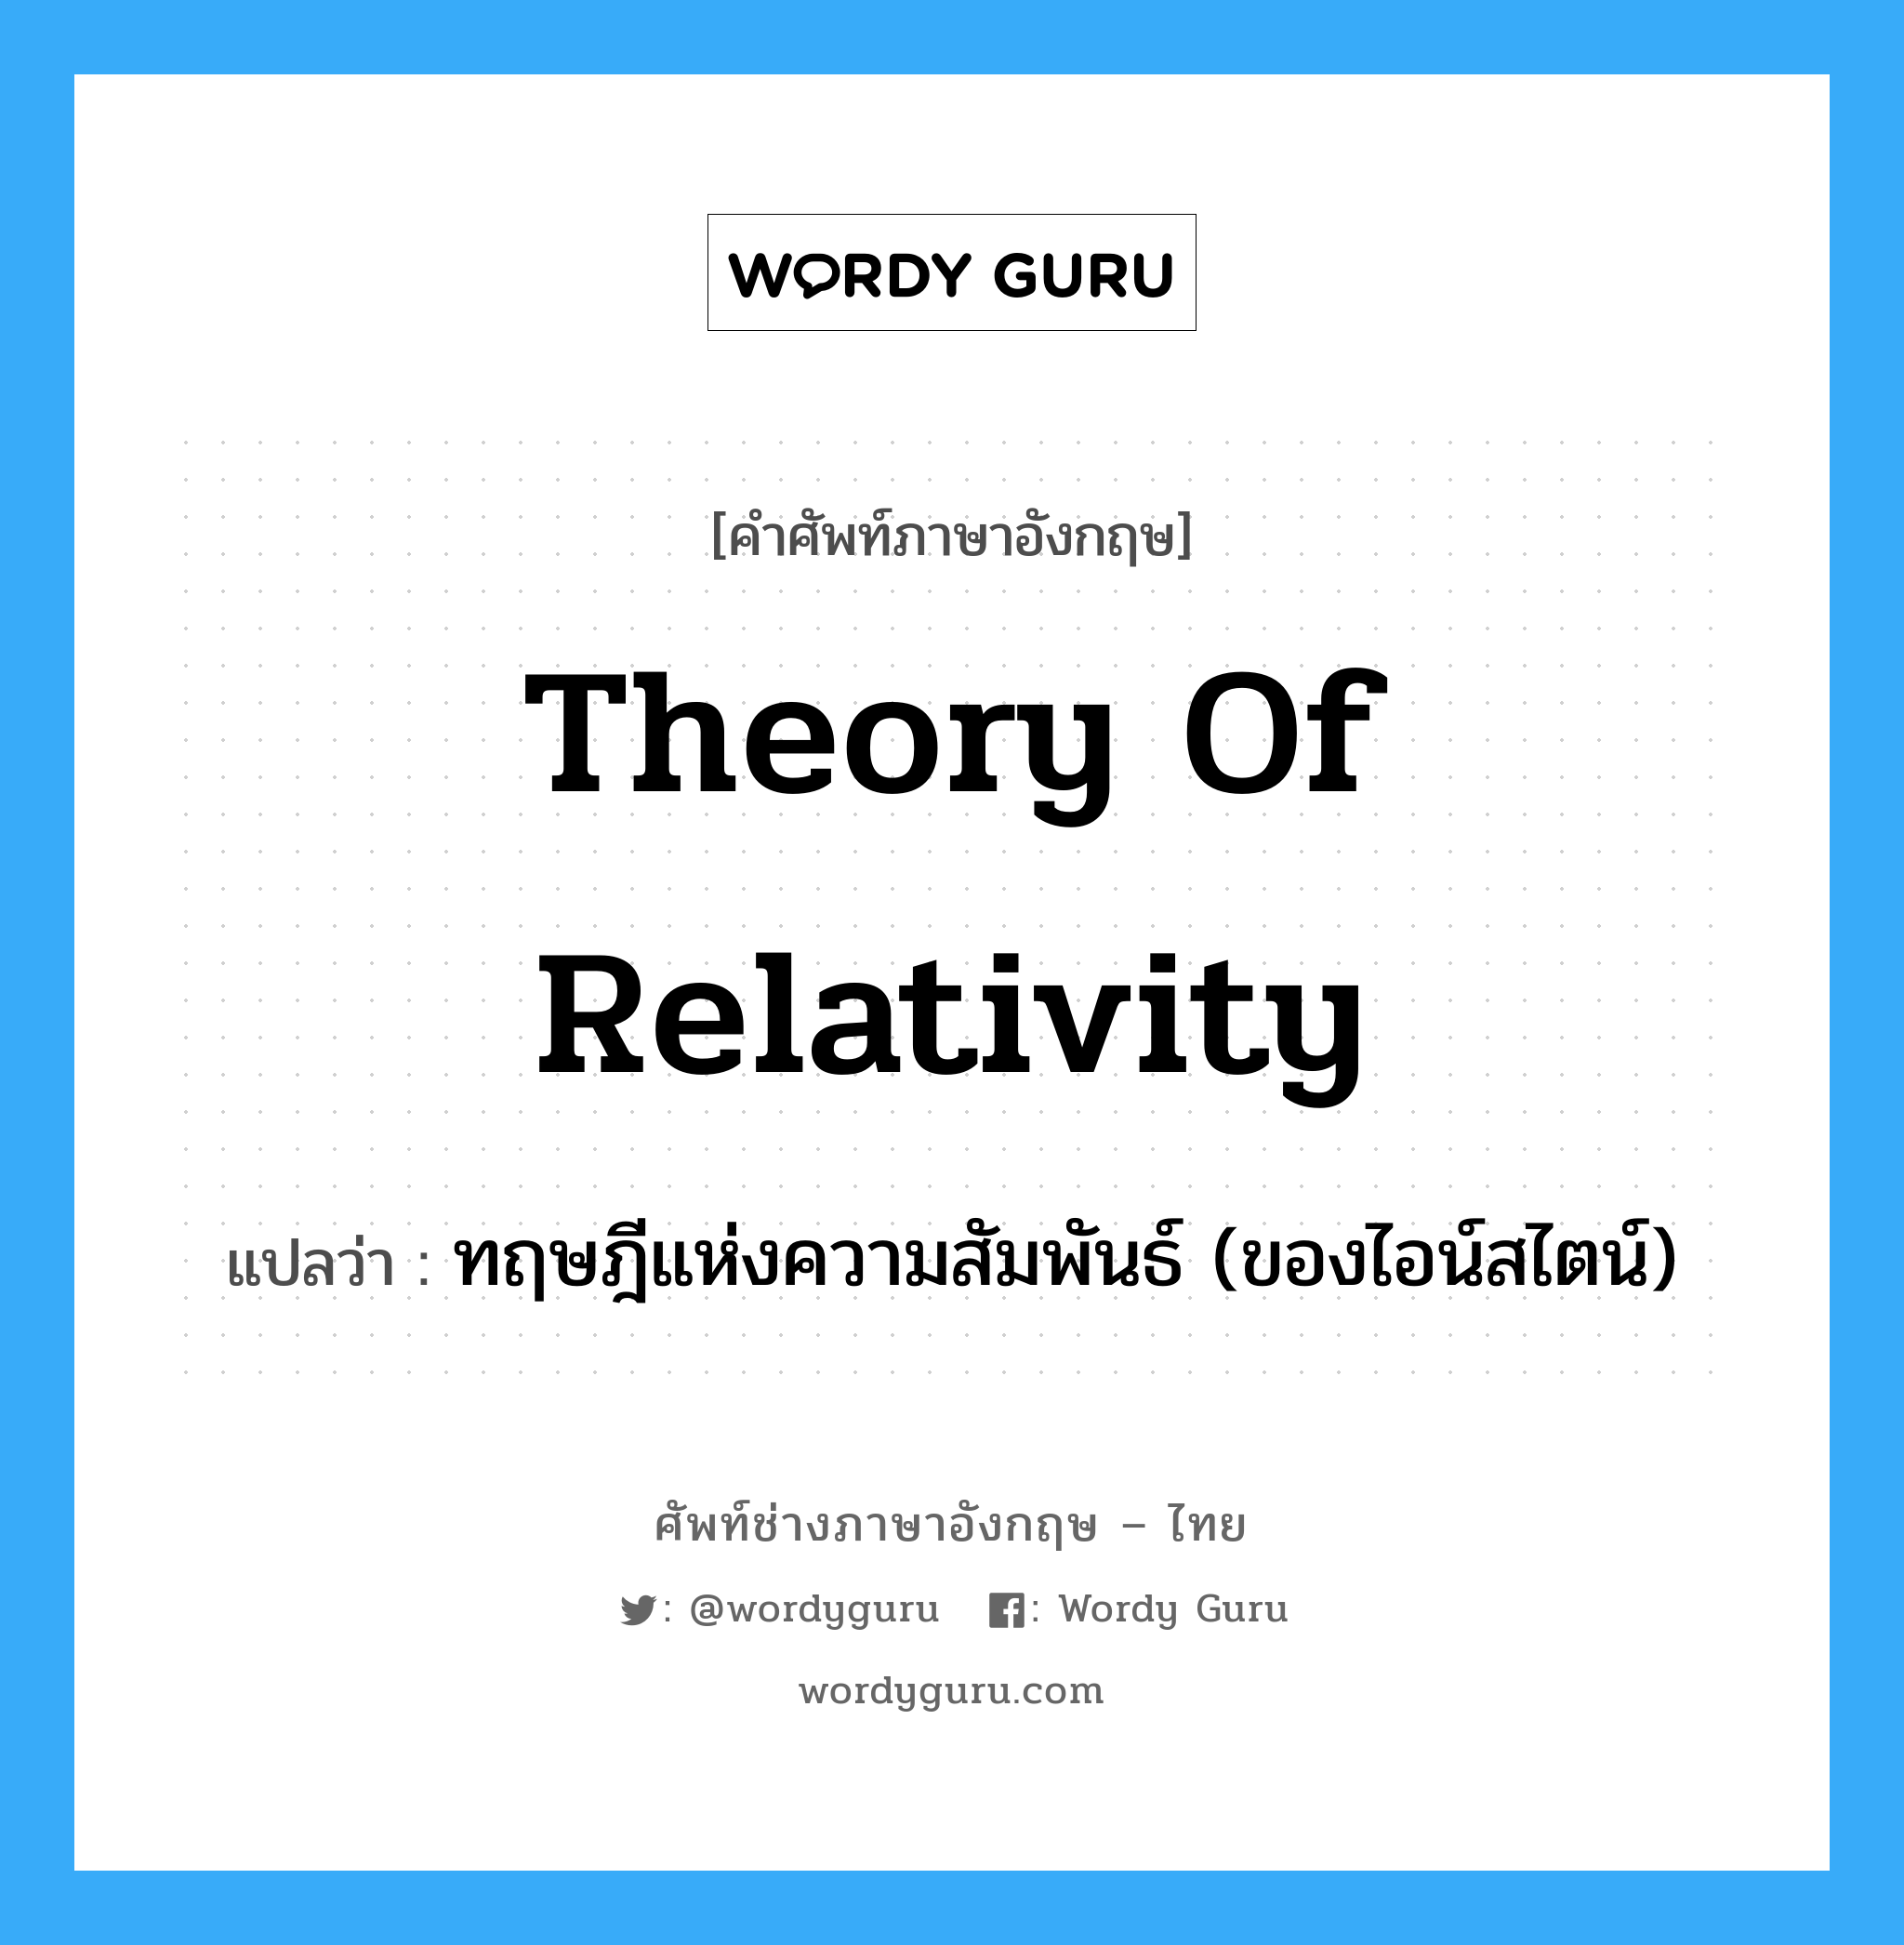 ทฤษฎีแห่งความสัมพันธ์ (ของไอน์สไตน์) ภาษาอังกฤษ?, คำศัพท์ช่างภาษาอังกฤษ - ไทย ทฤษฎีแห่งความสัมพันธ์ (ของไอน์สไตน์) คำศัพท์ภาษาอังกฤษ ทฤษฎีแห่งความสัมพันธ์ (ของไอน์สไตน์) แปลว่า Theory of Relativity